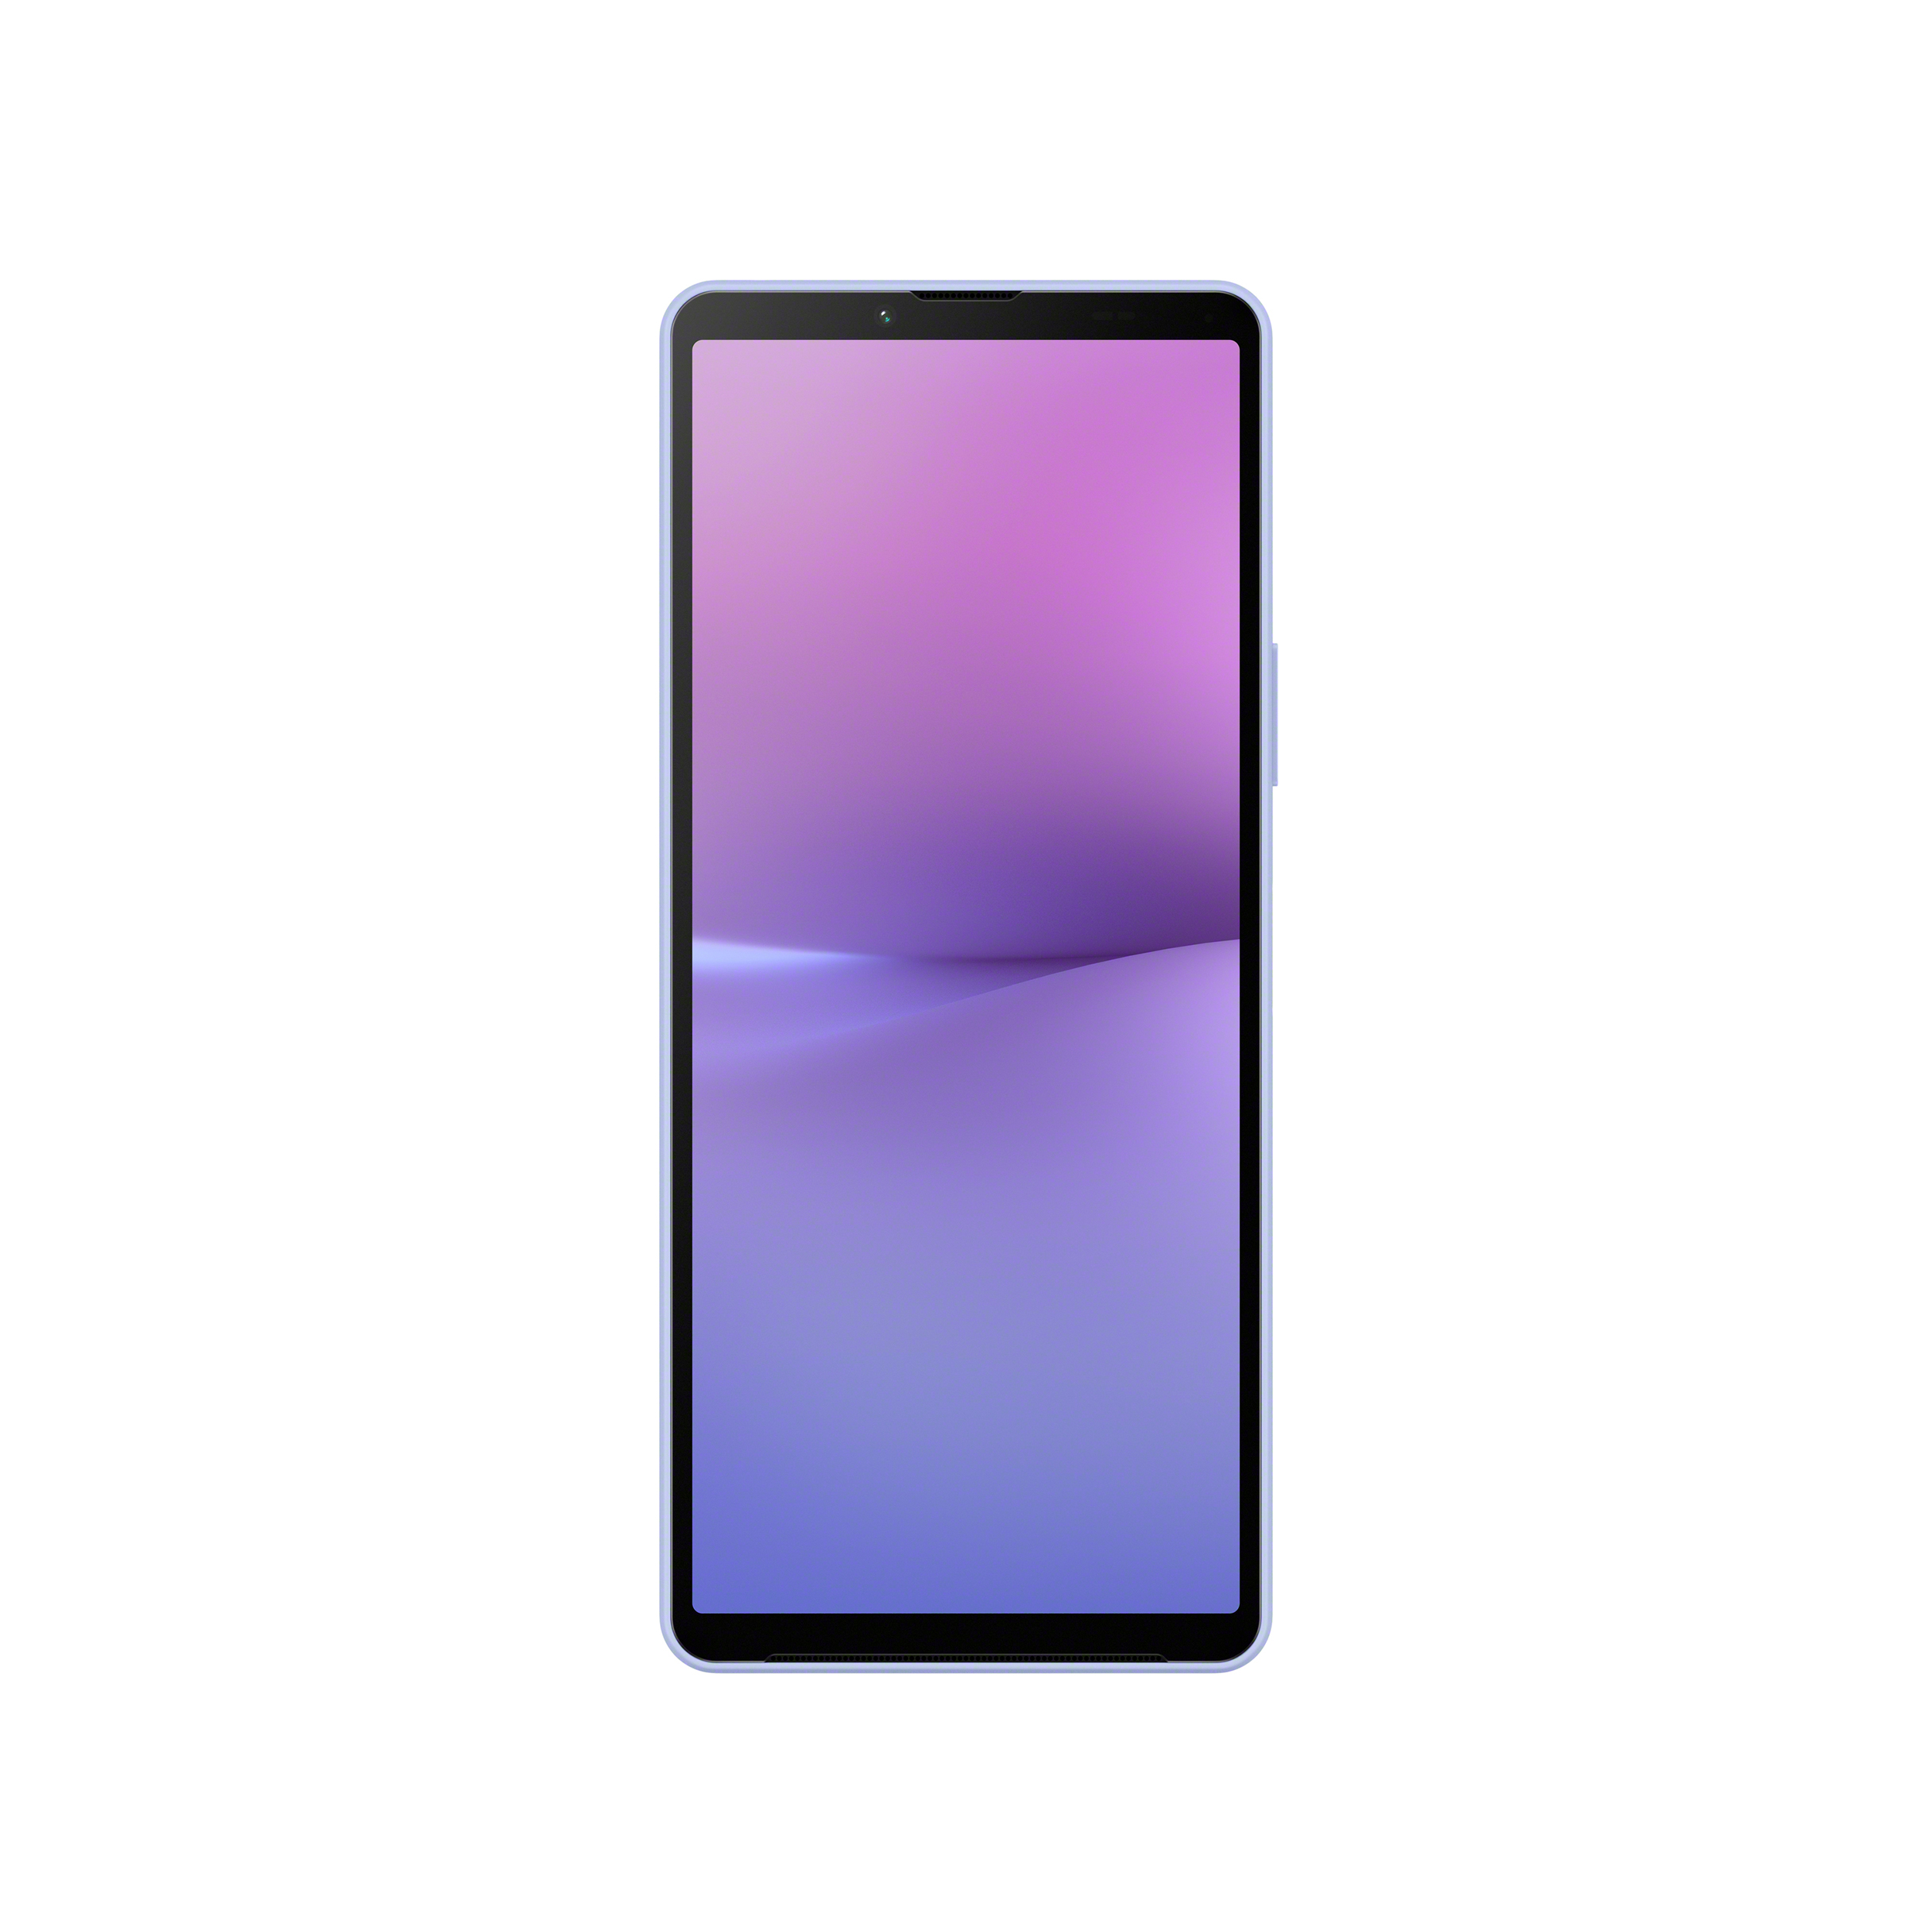 直立薰衣草紫 Xperia 10 V 智慧型手機，正面圖示